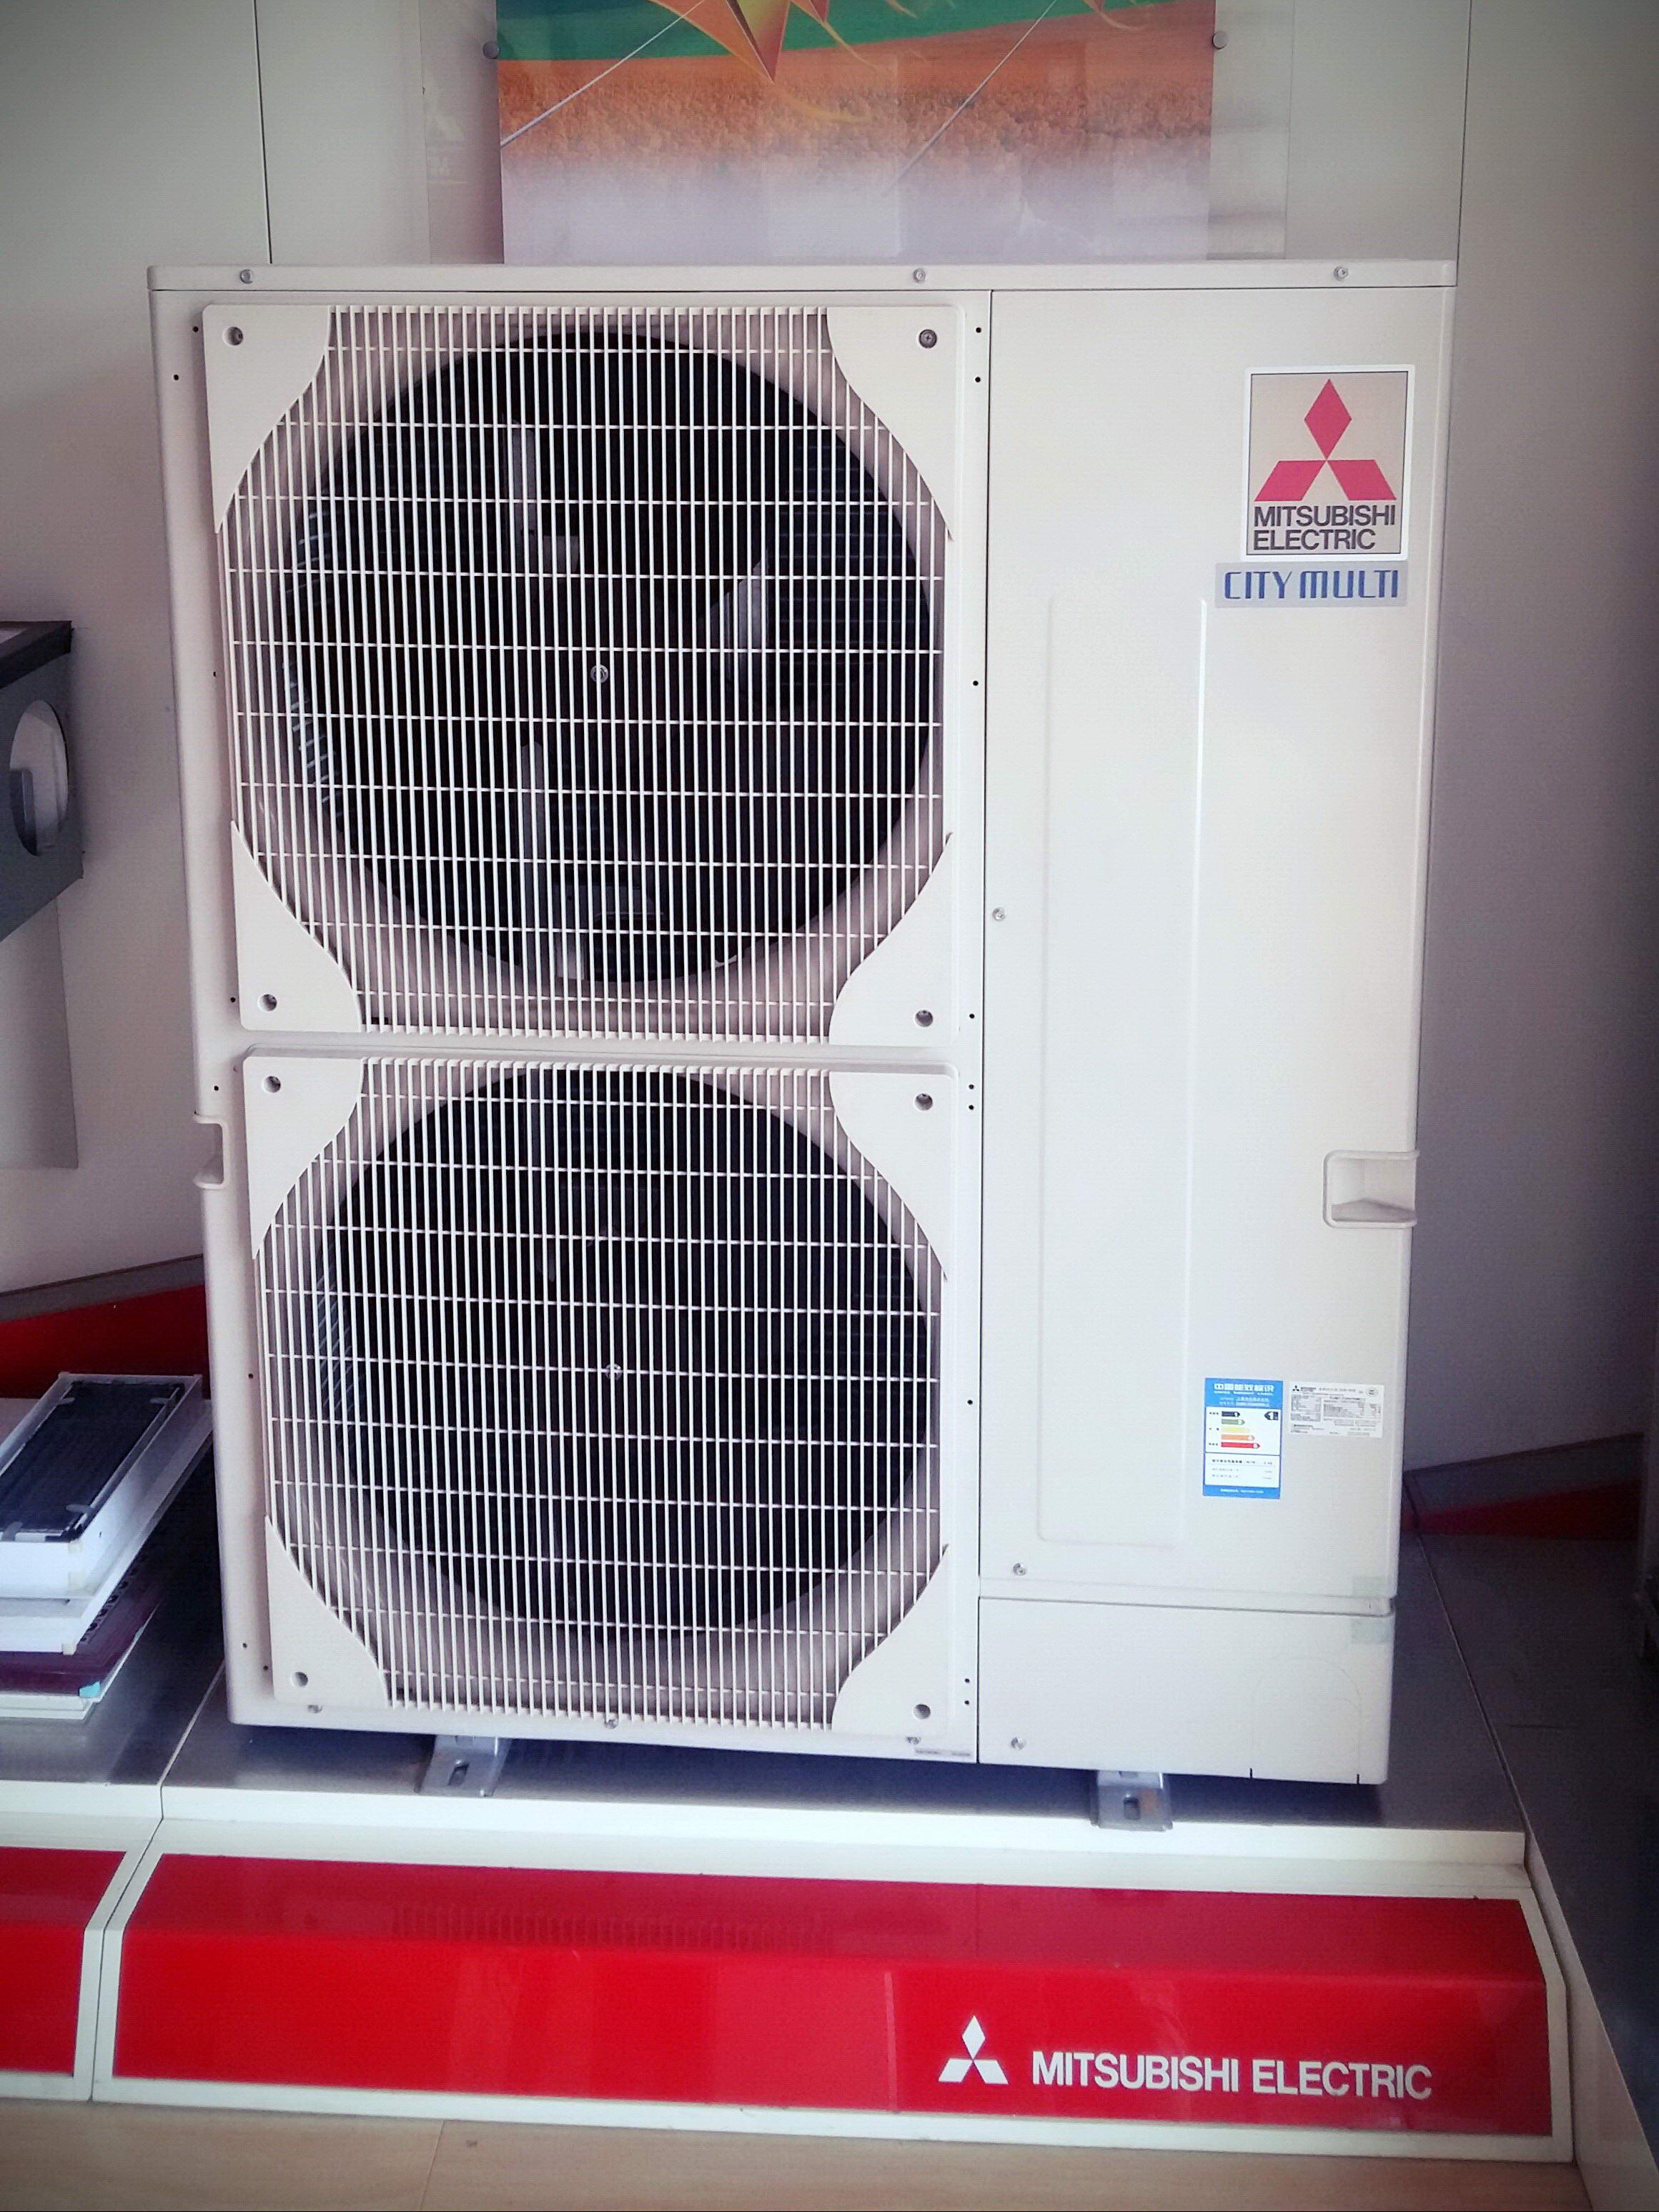 三菱电机中央空调制热—三菱电机中央空调制热的优点 - 舒适100网